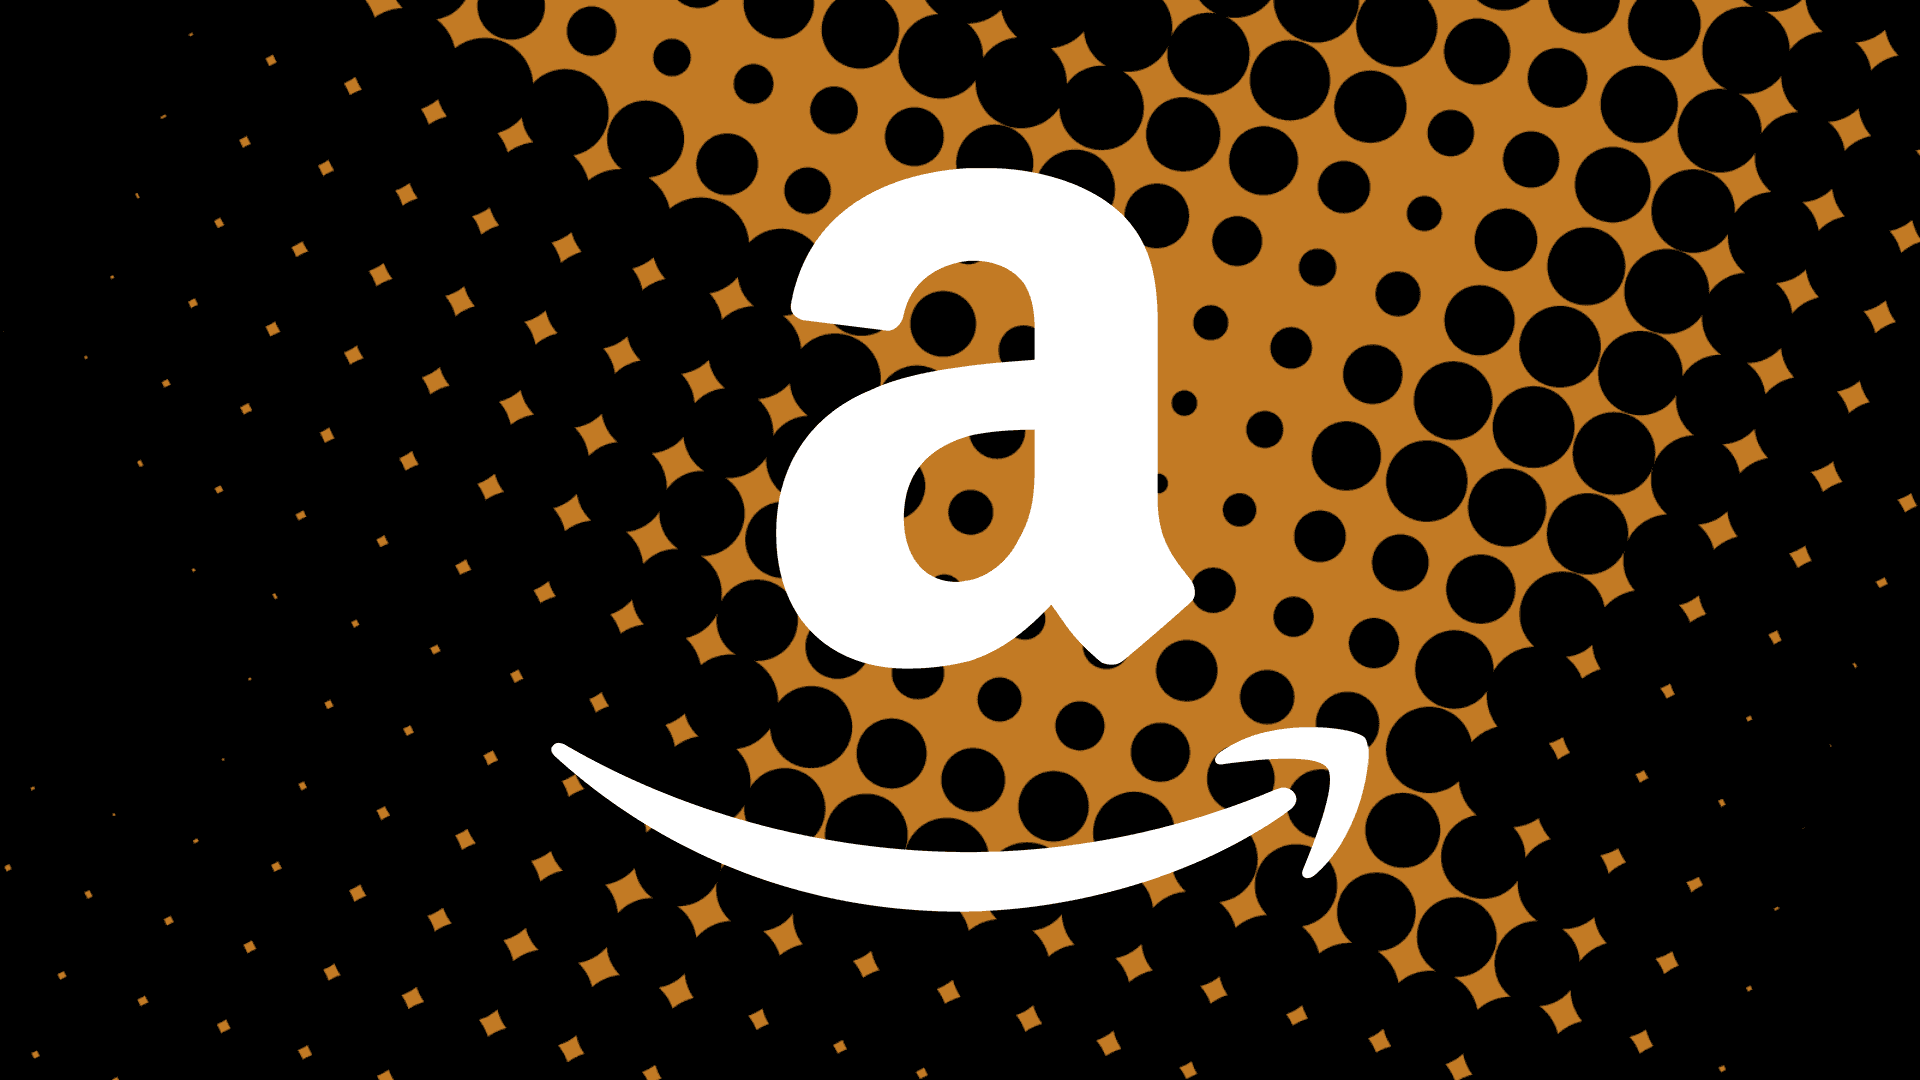 Kaufensie Bei Amazon Prime Ein Und Erhalten Sie Kostenlosen Versand Für Millionen Von Produkten.